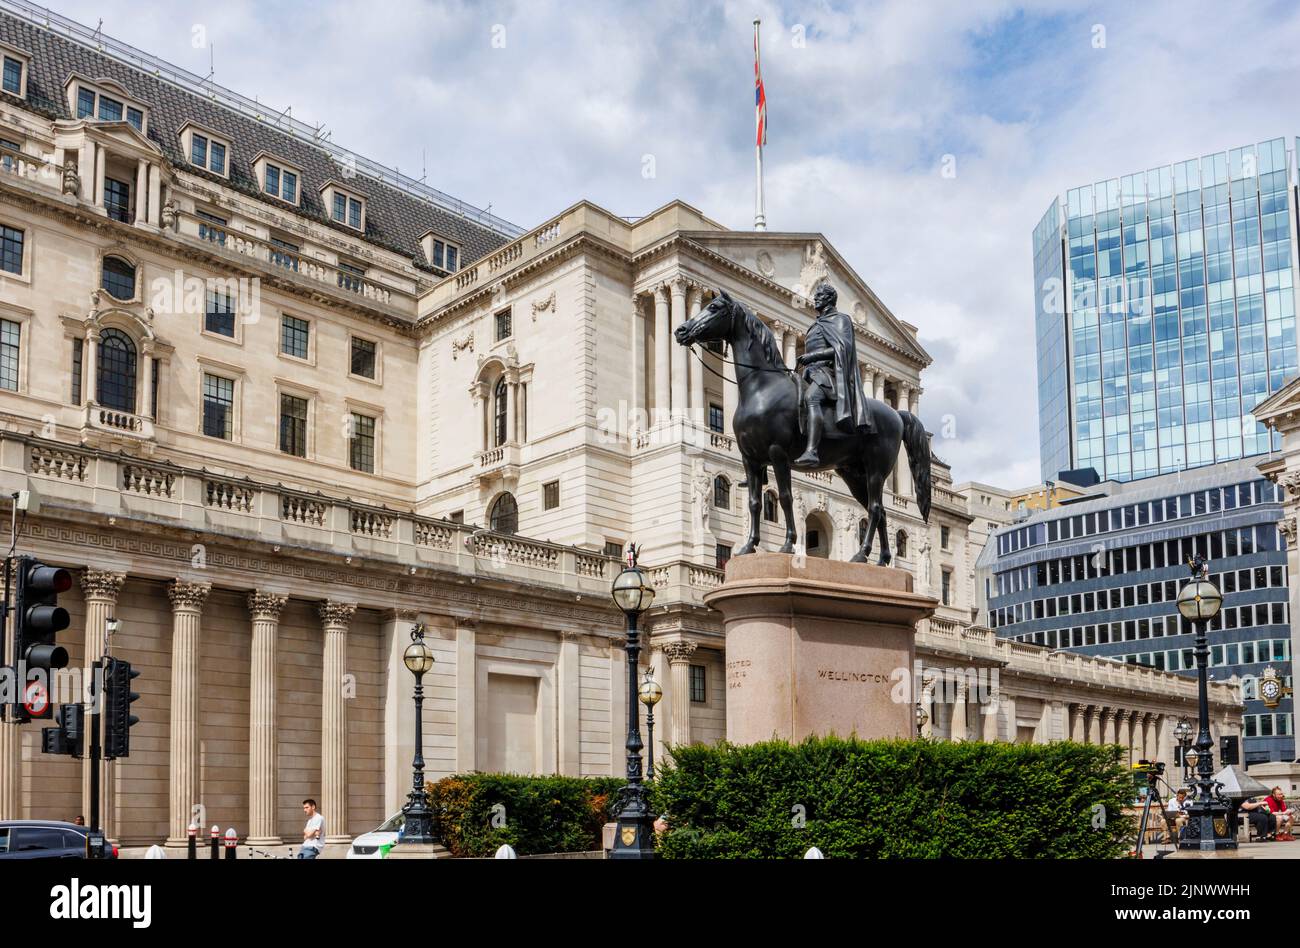 Estatua del duque de Wellington montada a caballo fuera de la Bolsa Real y vista de la fachada del Banco de Inglaterra en la Ciudad de Londres EC3 Foto de stock